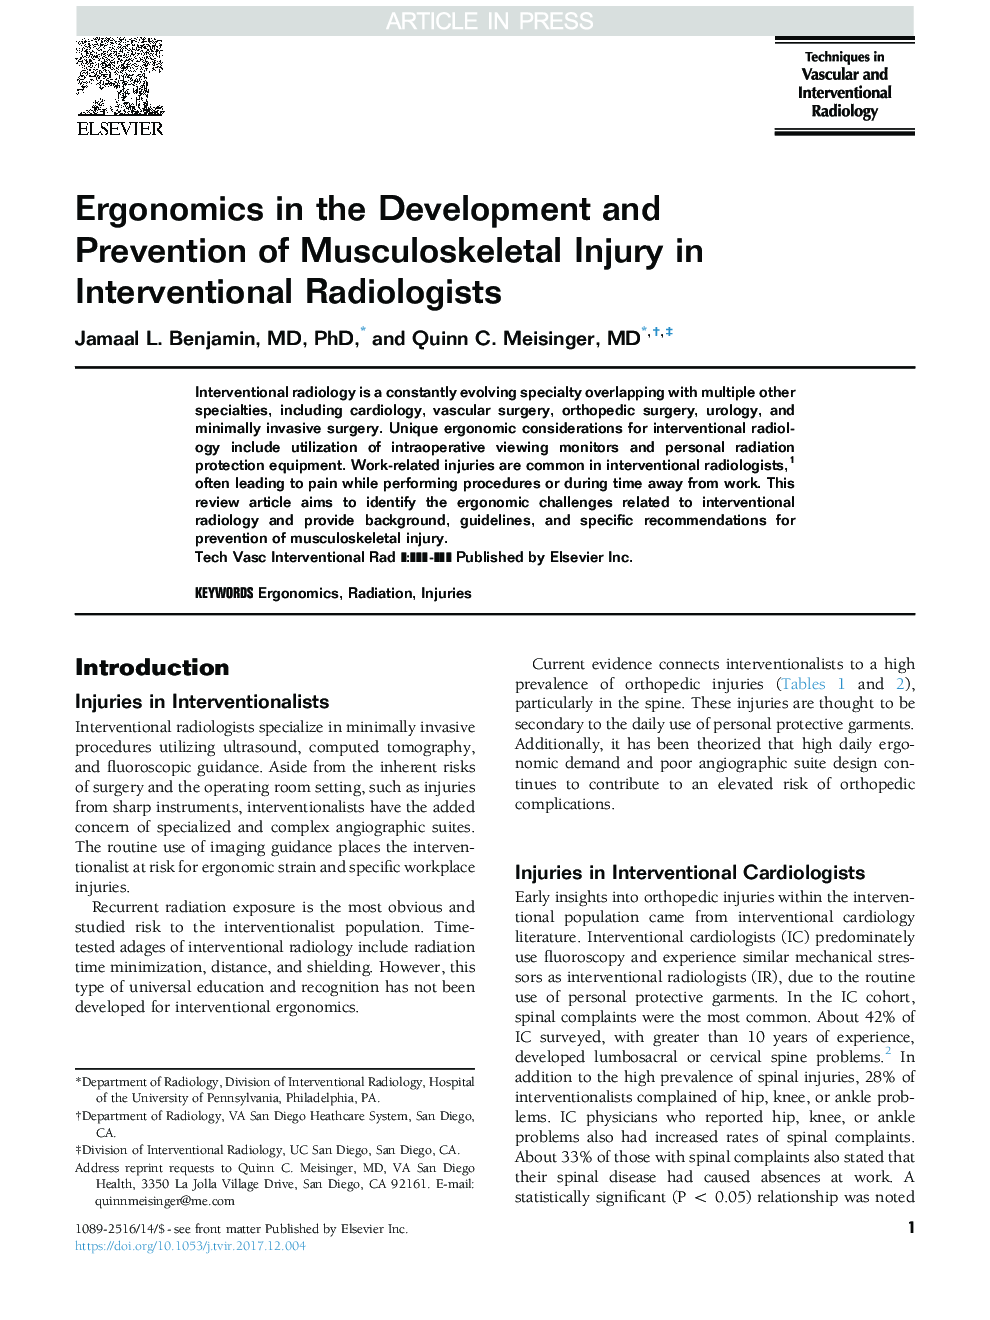 ارگونومی در توسعه و پیشگیری از آسیب های اسکلتی-عضلانی در متخصصان رادیولوژی مداخله ای